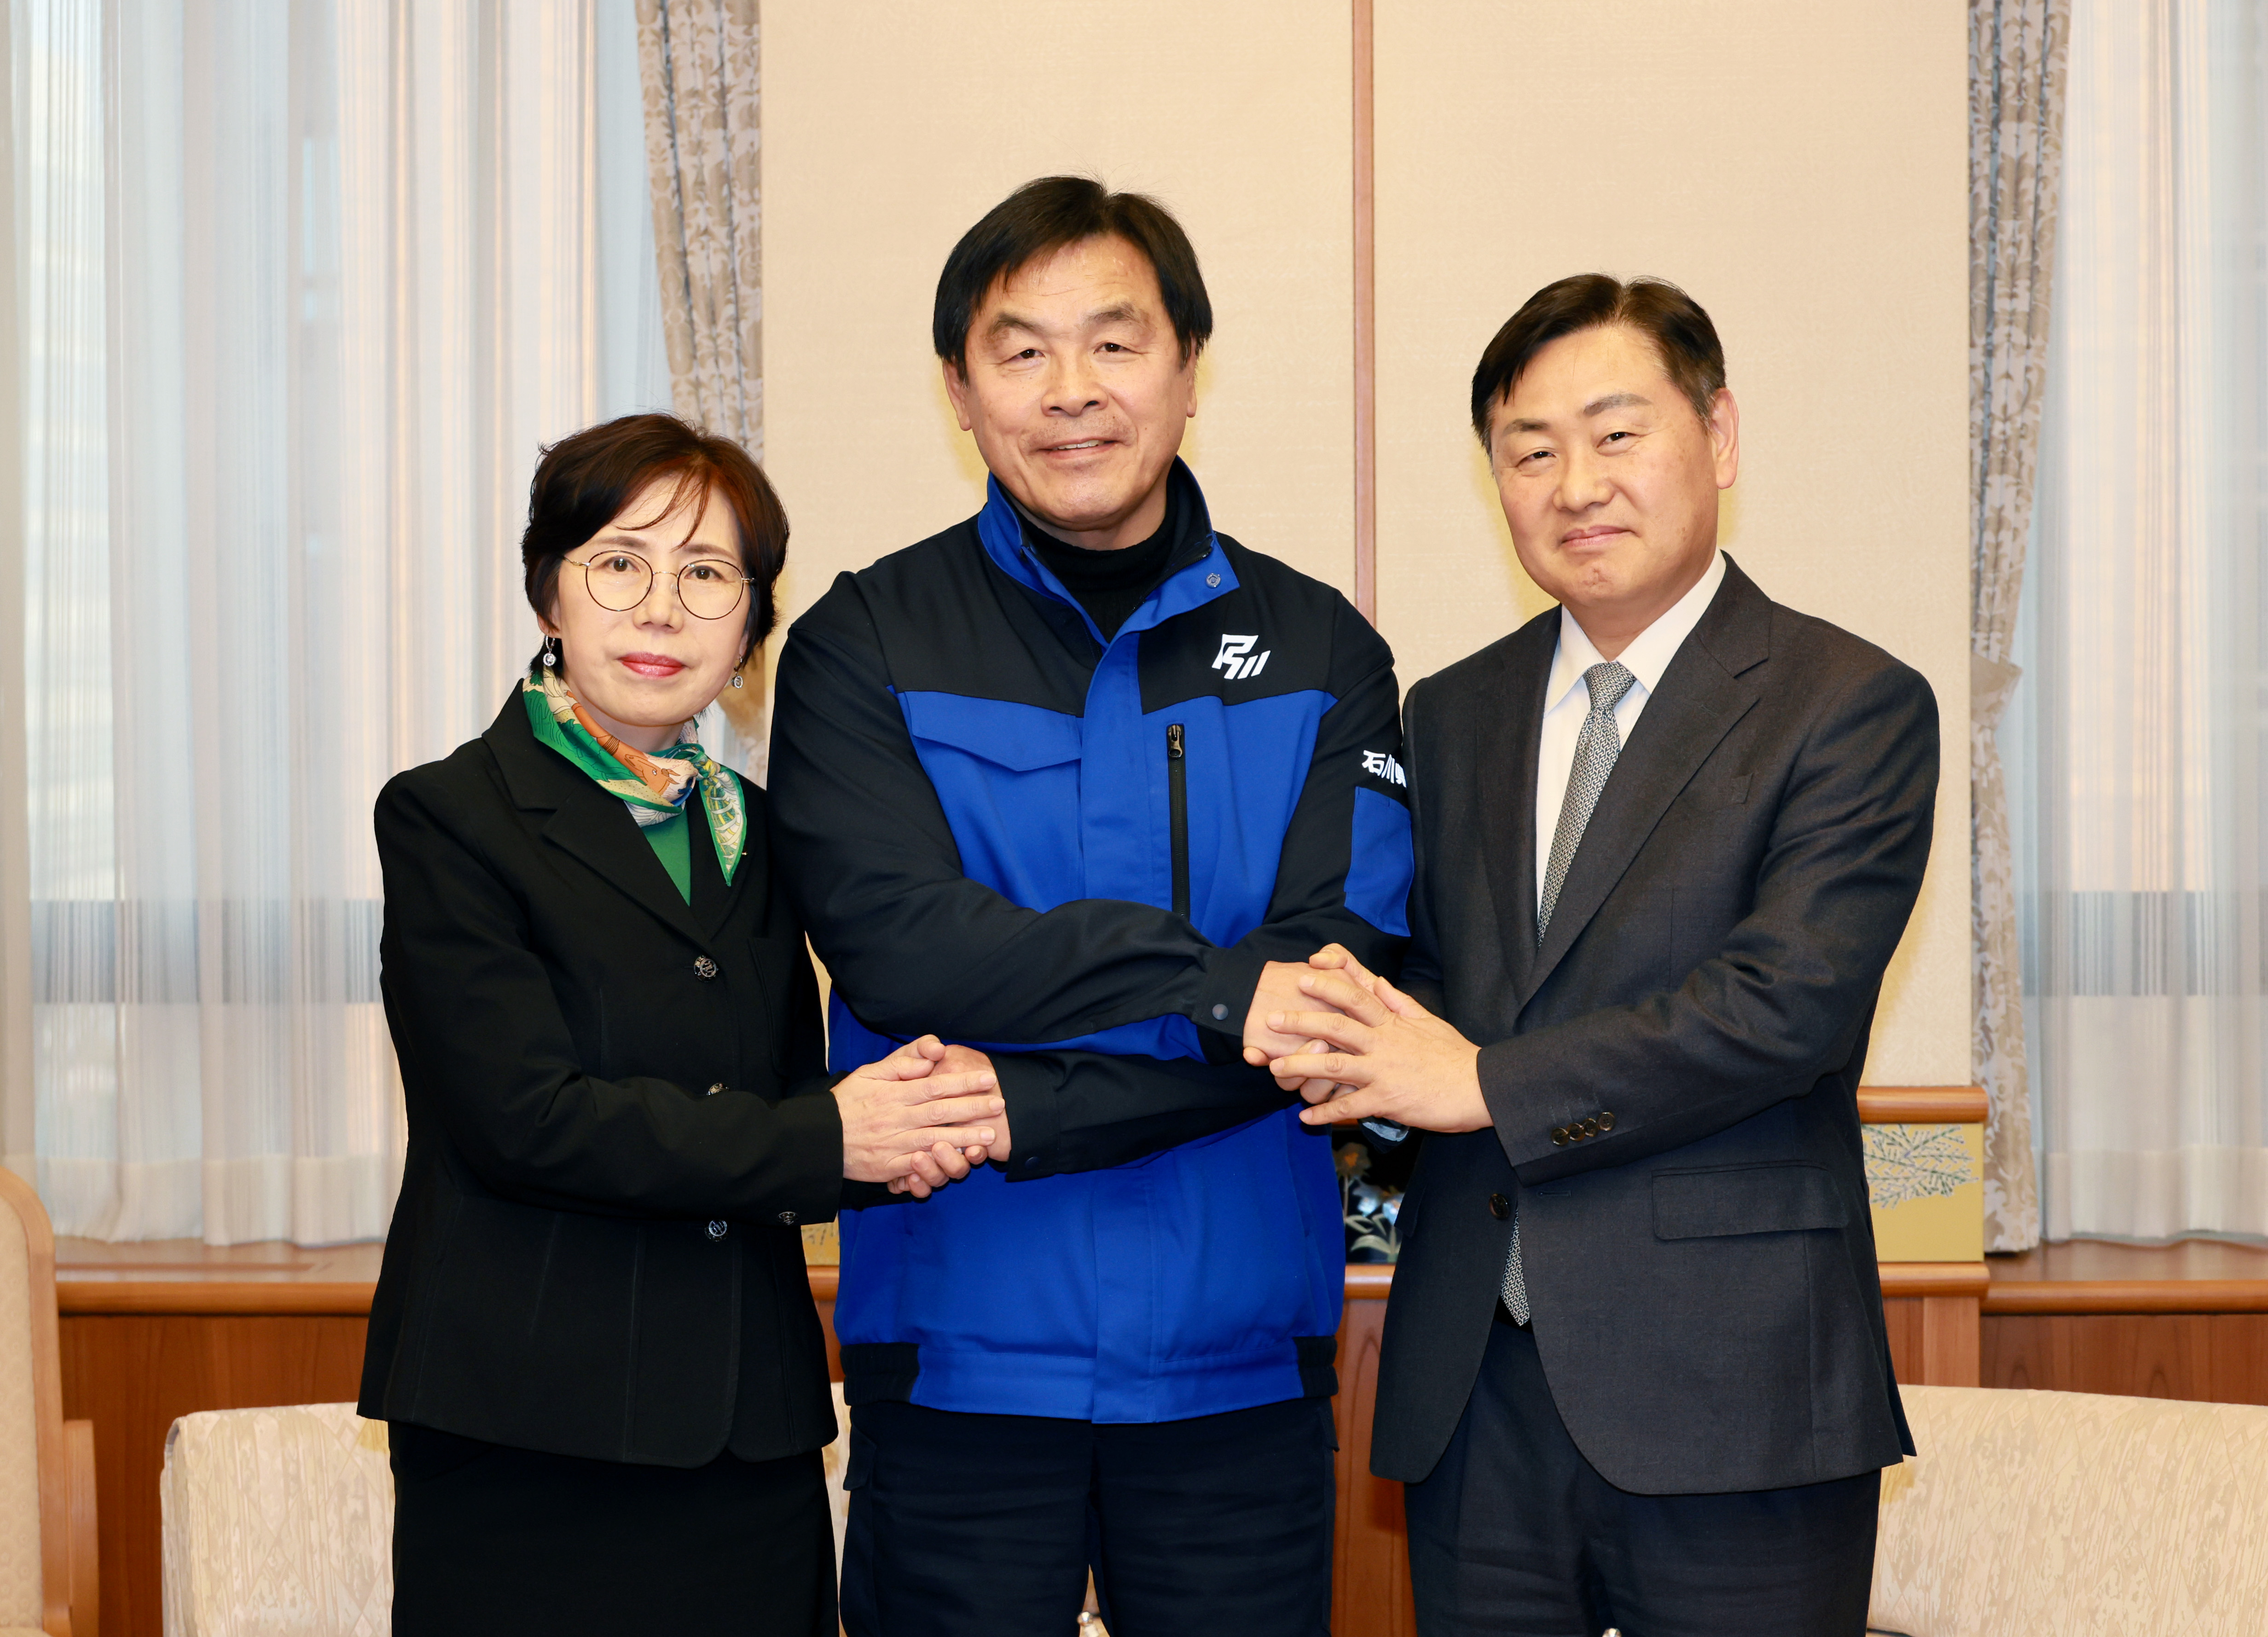 金寛永（キム·グァンヨン）道知事、地震被害を受けた日本・石川県民に道民の慰労を伝達